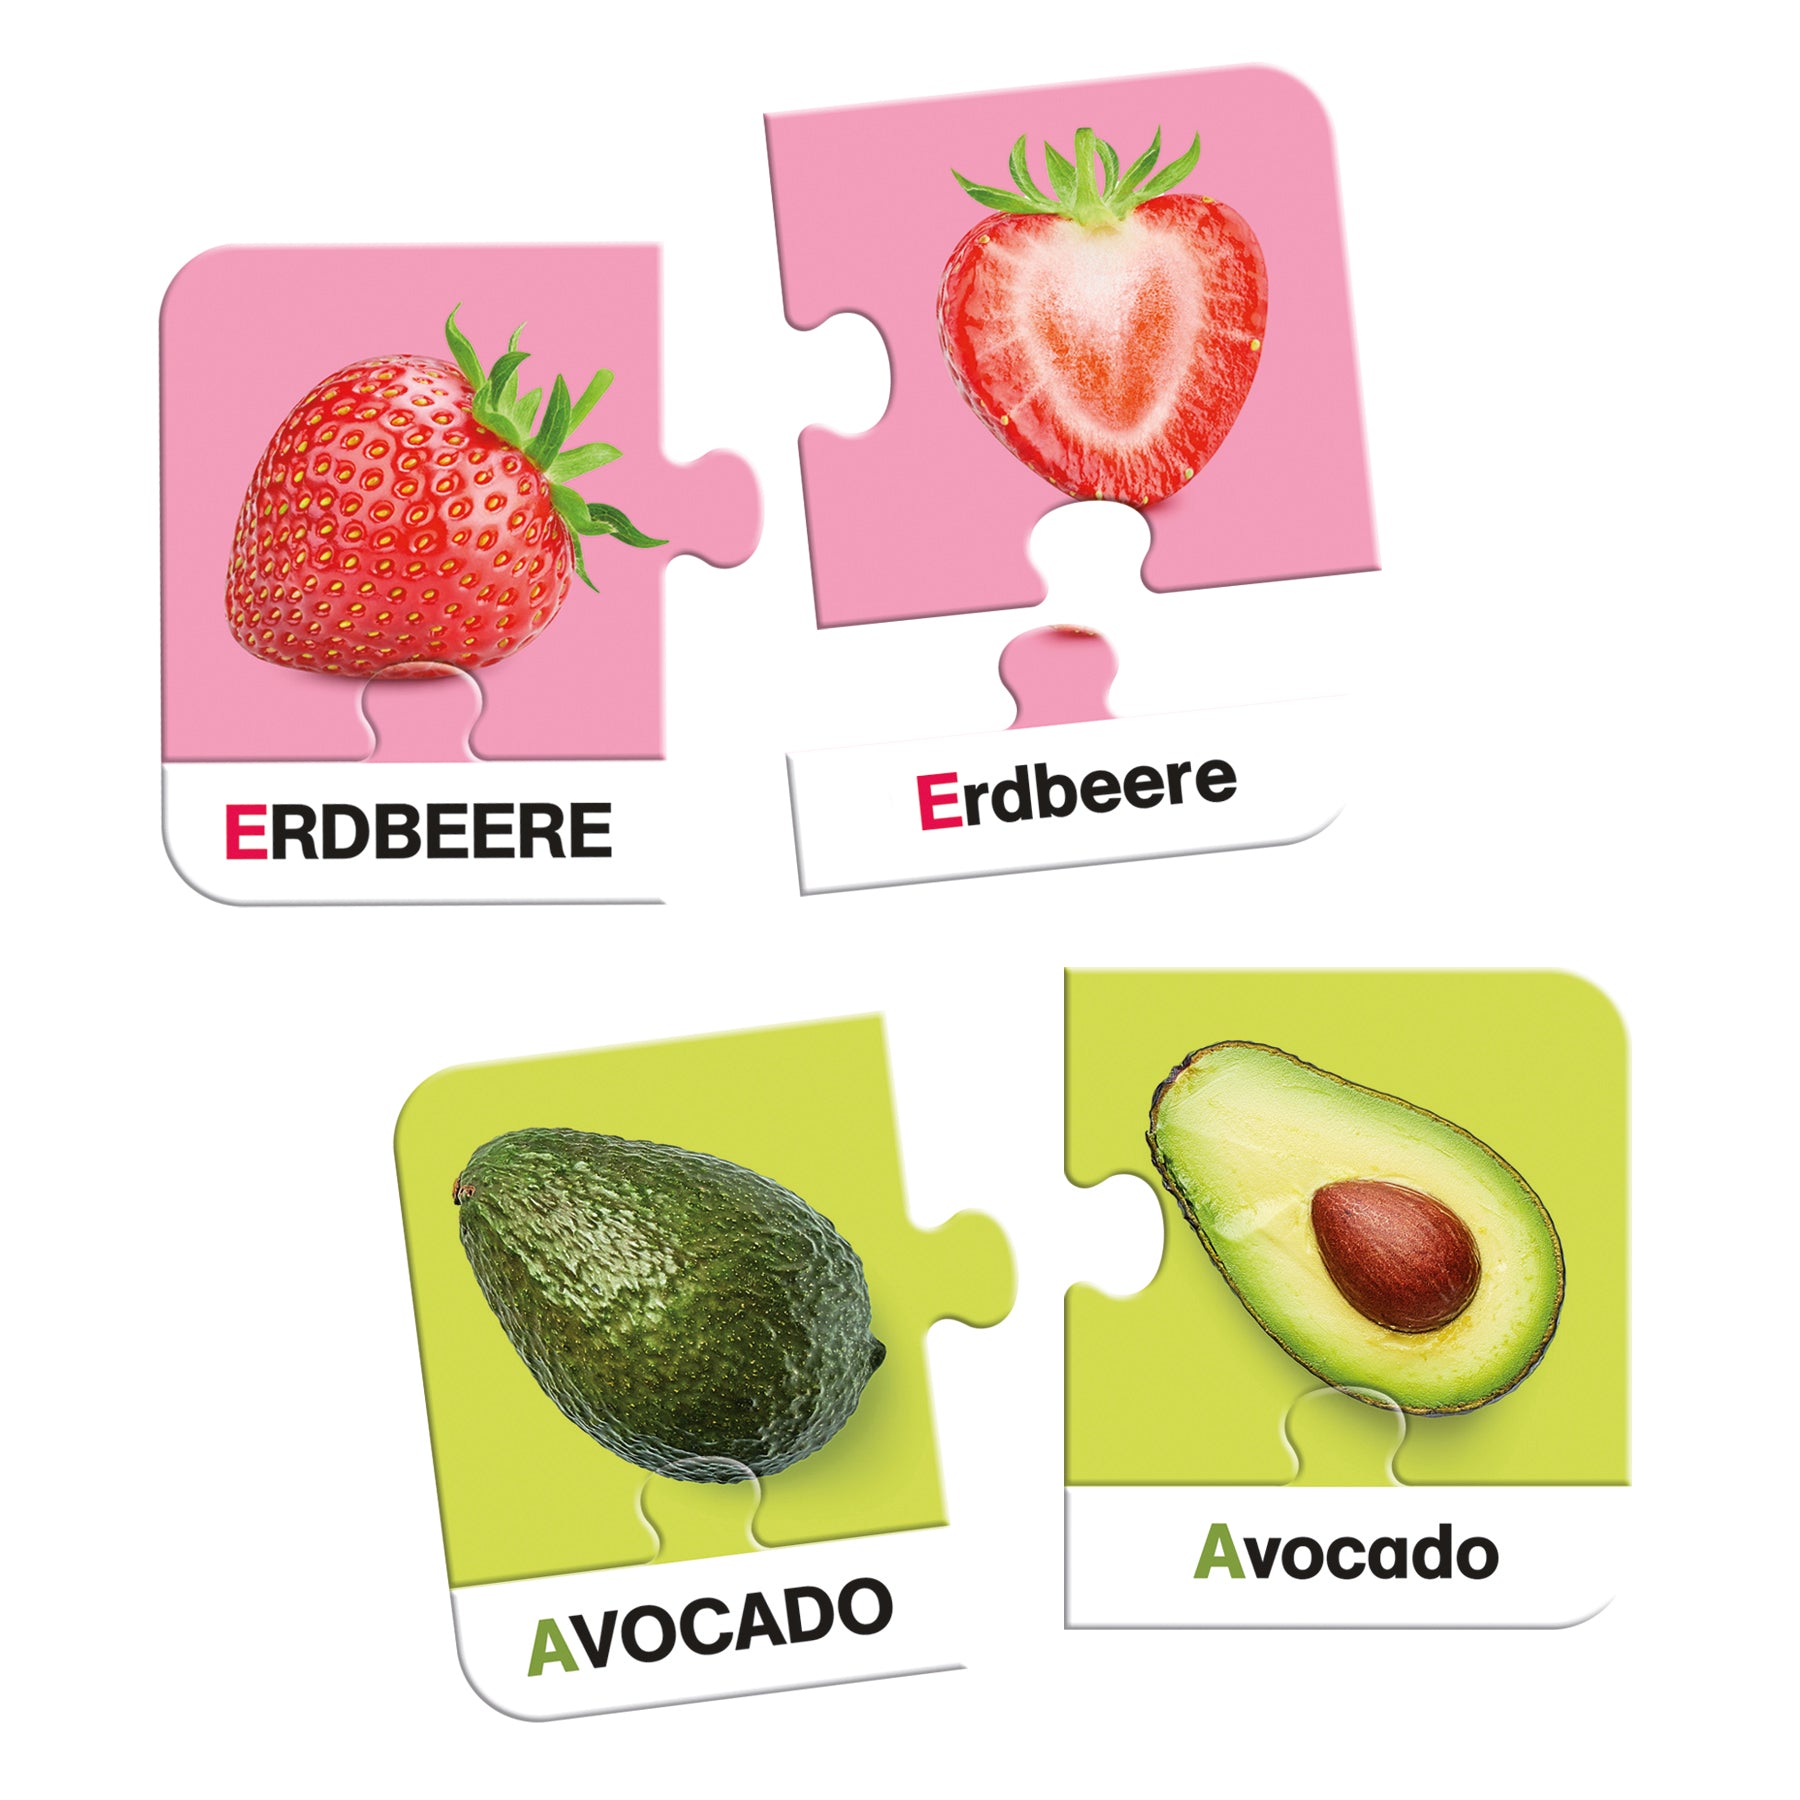 Ich Lerne Obst & Gemüse - product image - Jumboplay.com